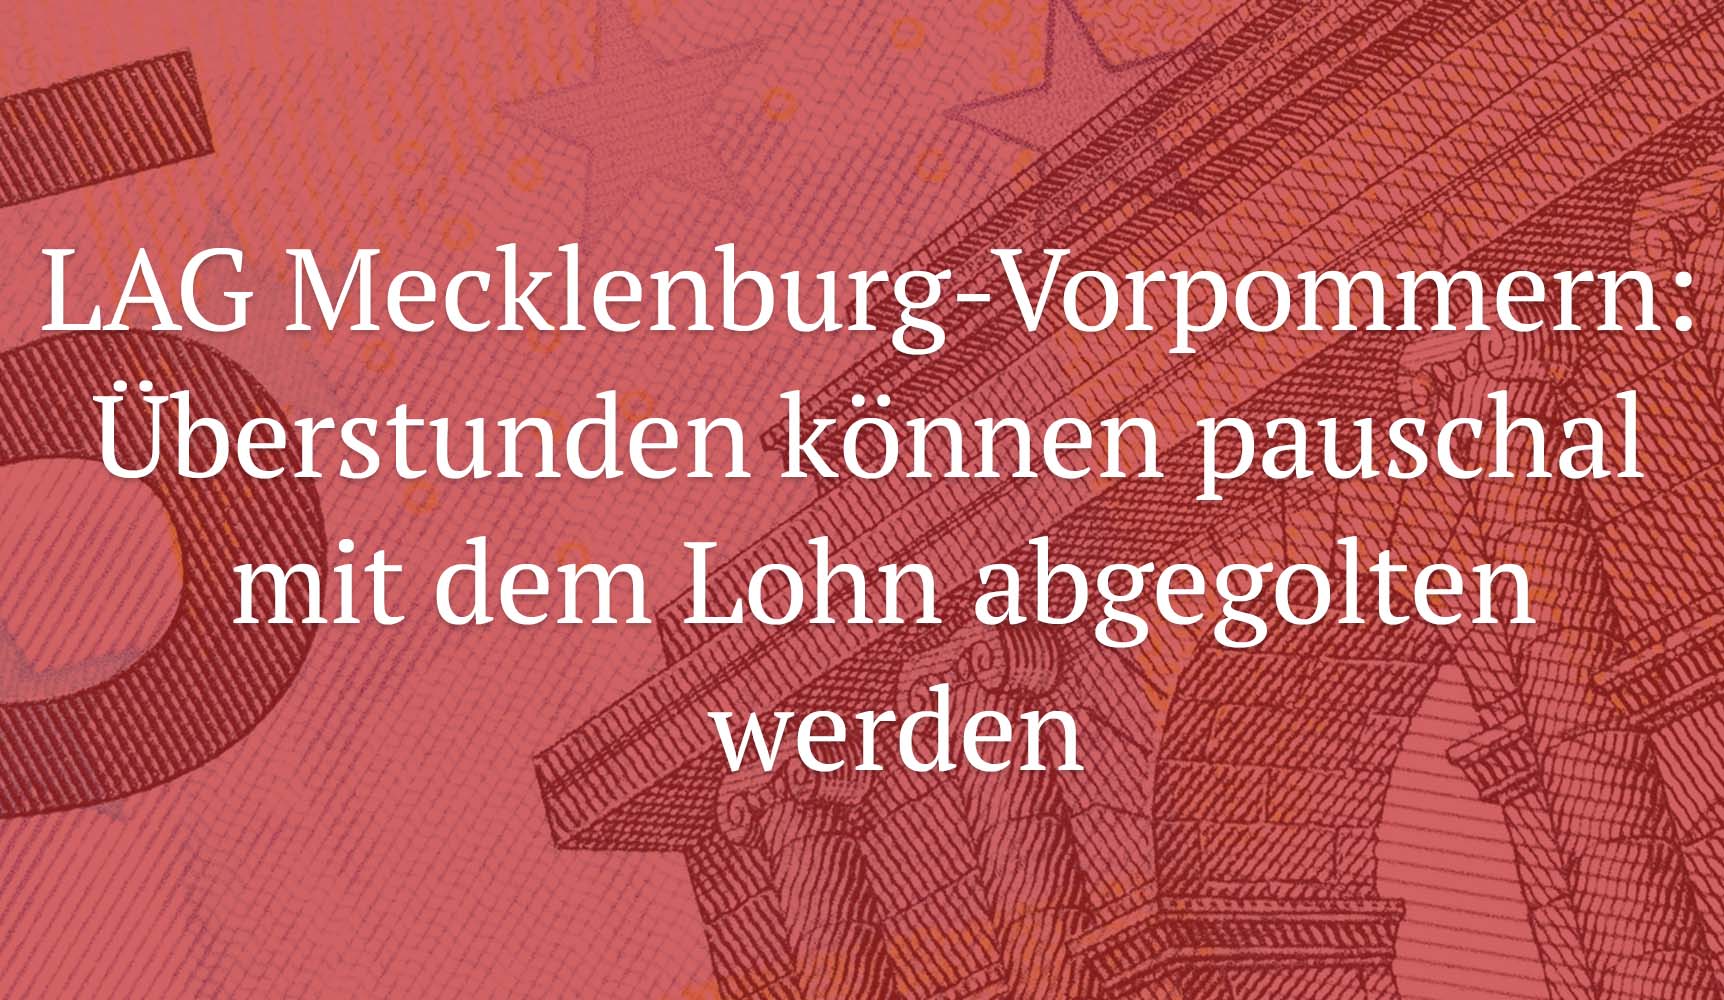 LAG Mecklenburg-Vorpommern: Überstunden können pauschal mit dem Lohn abgegolten werden